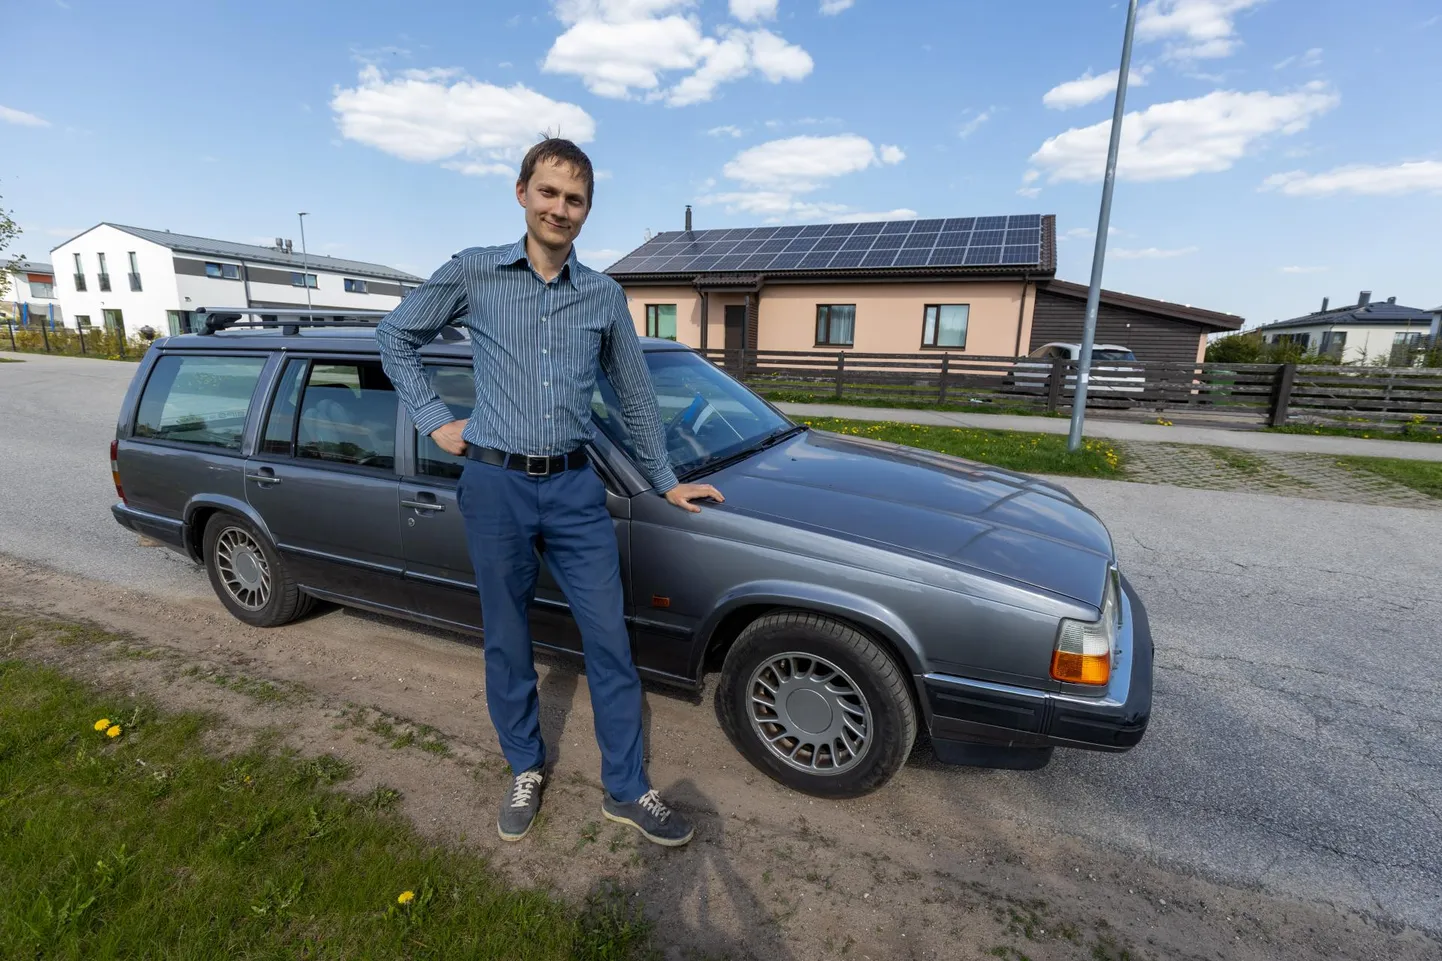 Füüsikaõpetaja Juhan Koppeli palgatõus kulub kodu laenumaksetele. 30 aastat vana Volvot ta uue auto vastu välja vahetada ei kavatse